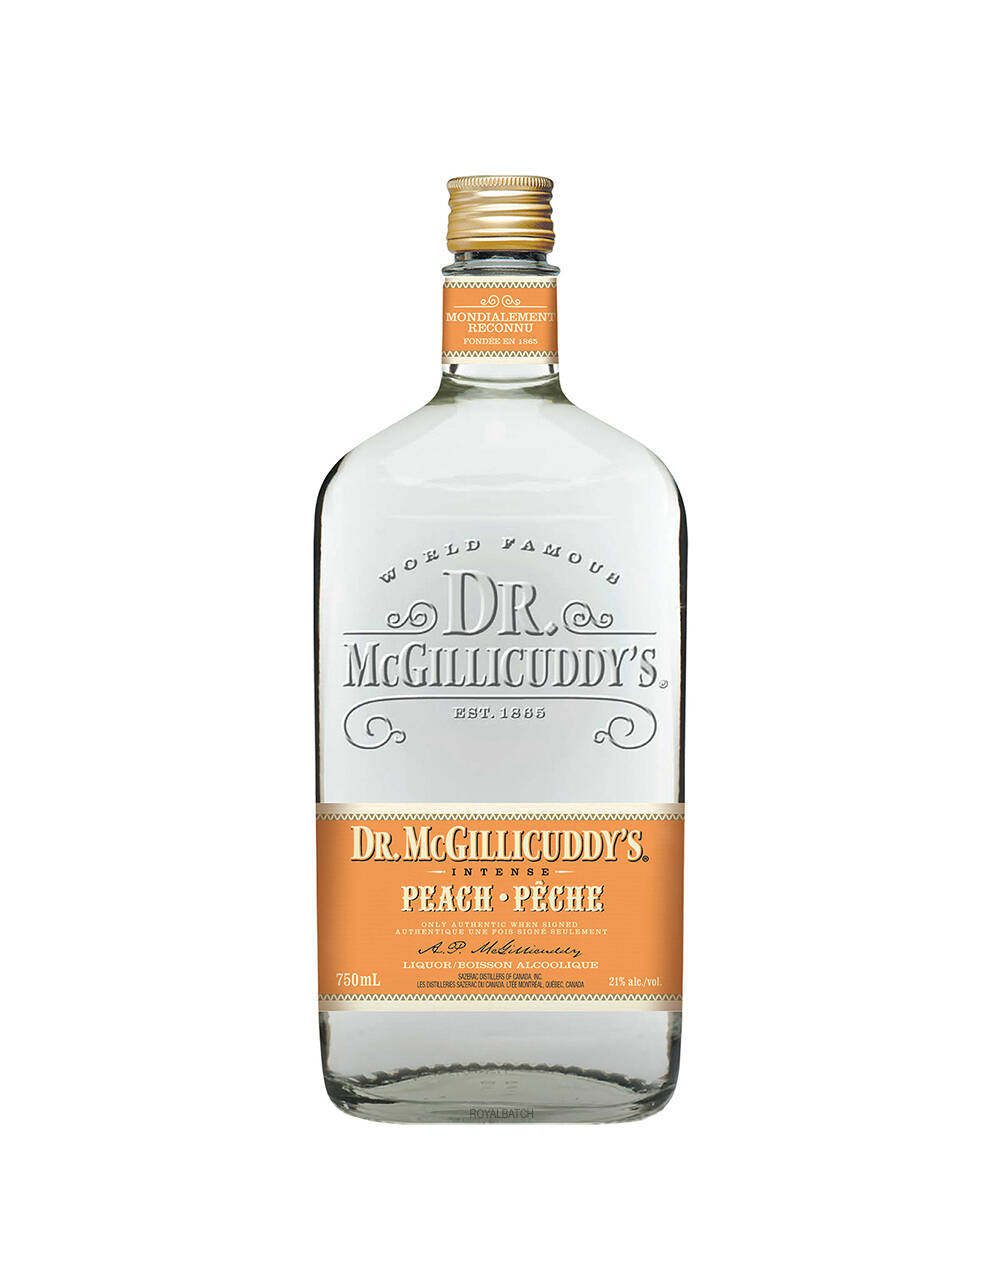 Dr. McGillicuddys Peach Liqueur 50ml